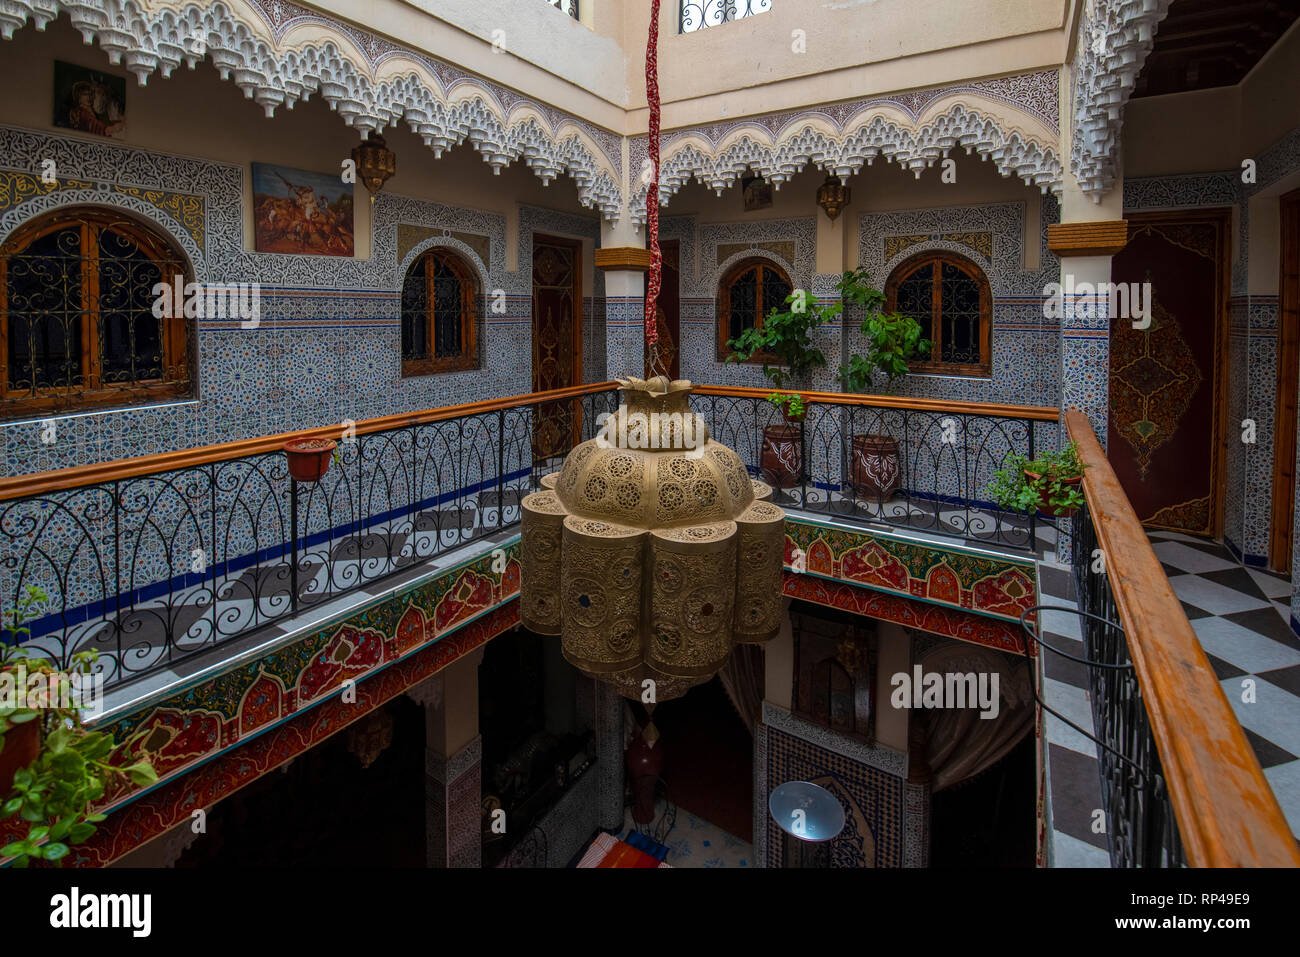 Cour intérieure avec des murs et du sol de mosaïque. Arabesque colorée ornée et traditionnelles sculptures murales au-dessus d'un riad marocain dans archway Banque D'Images